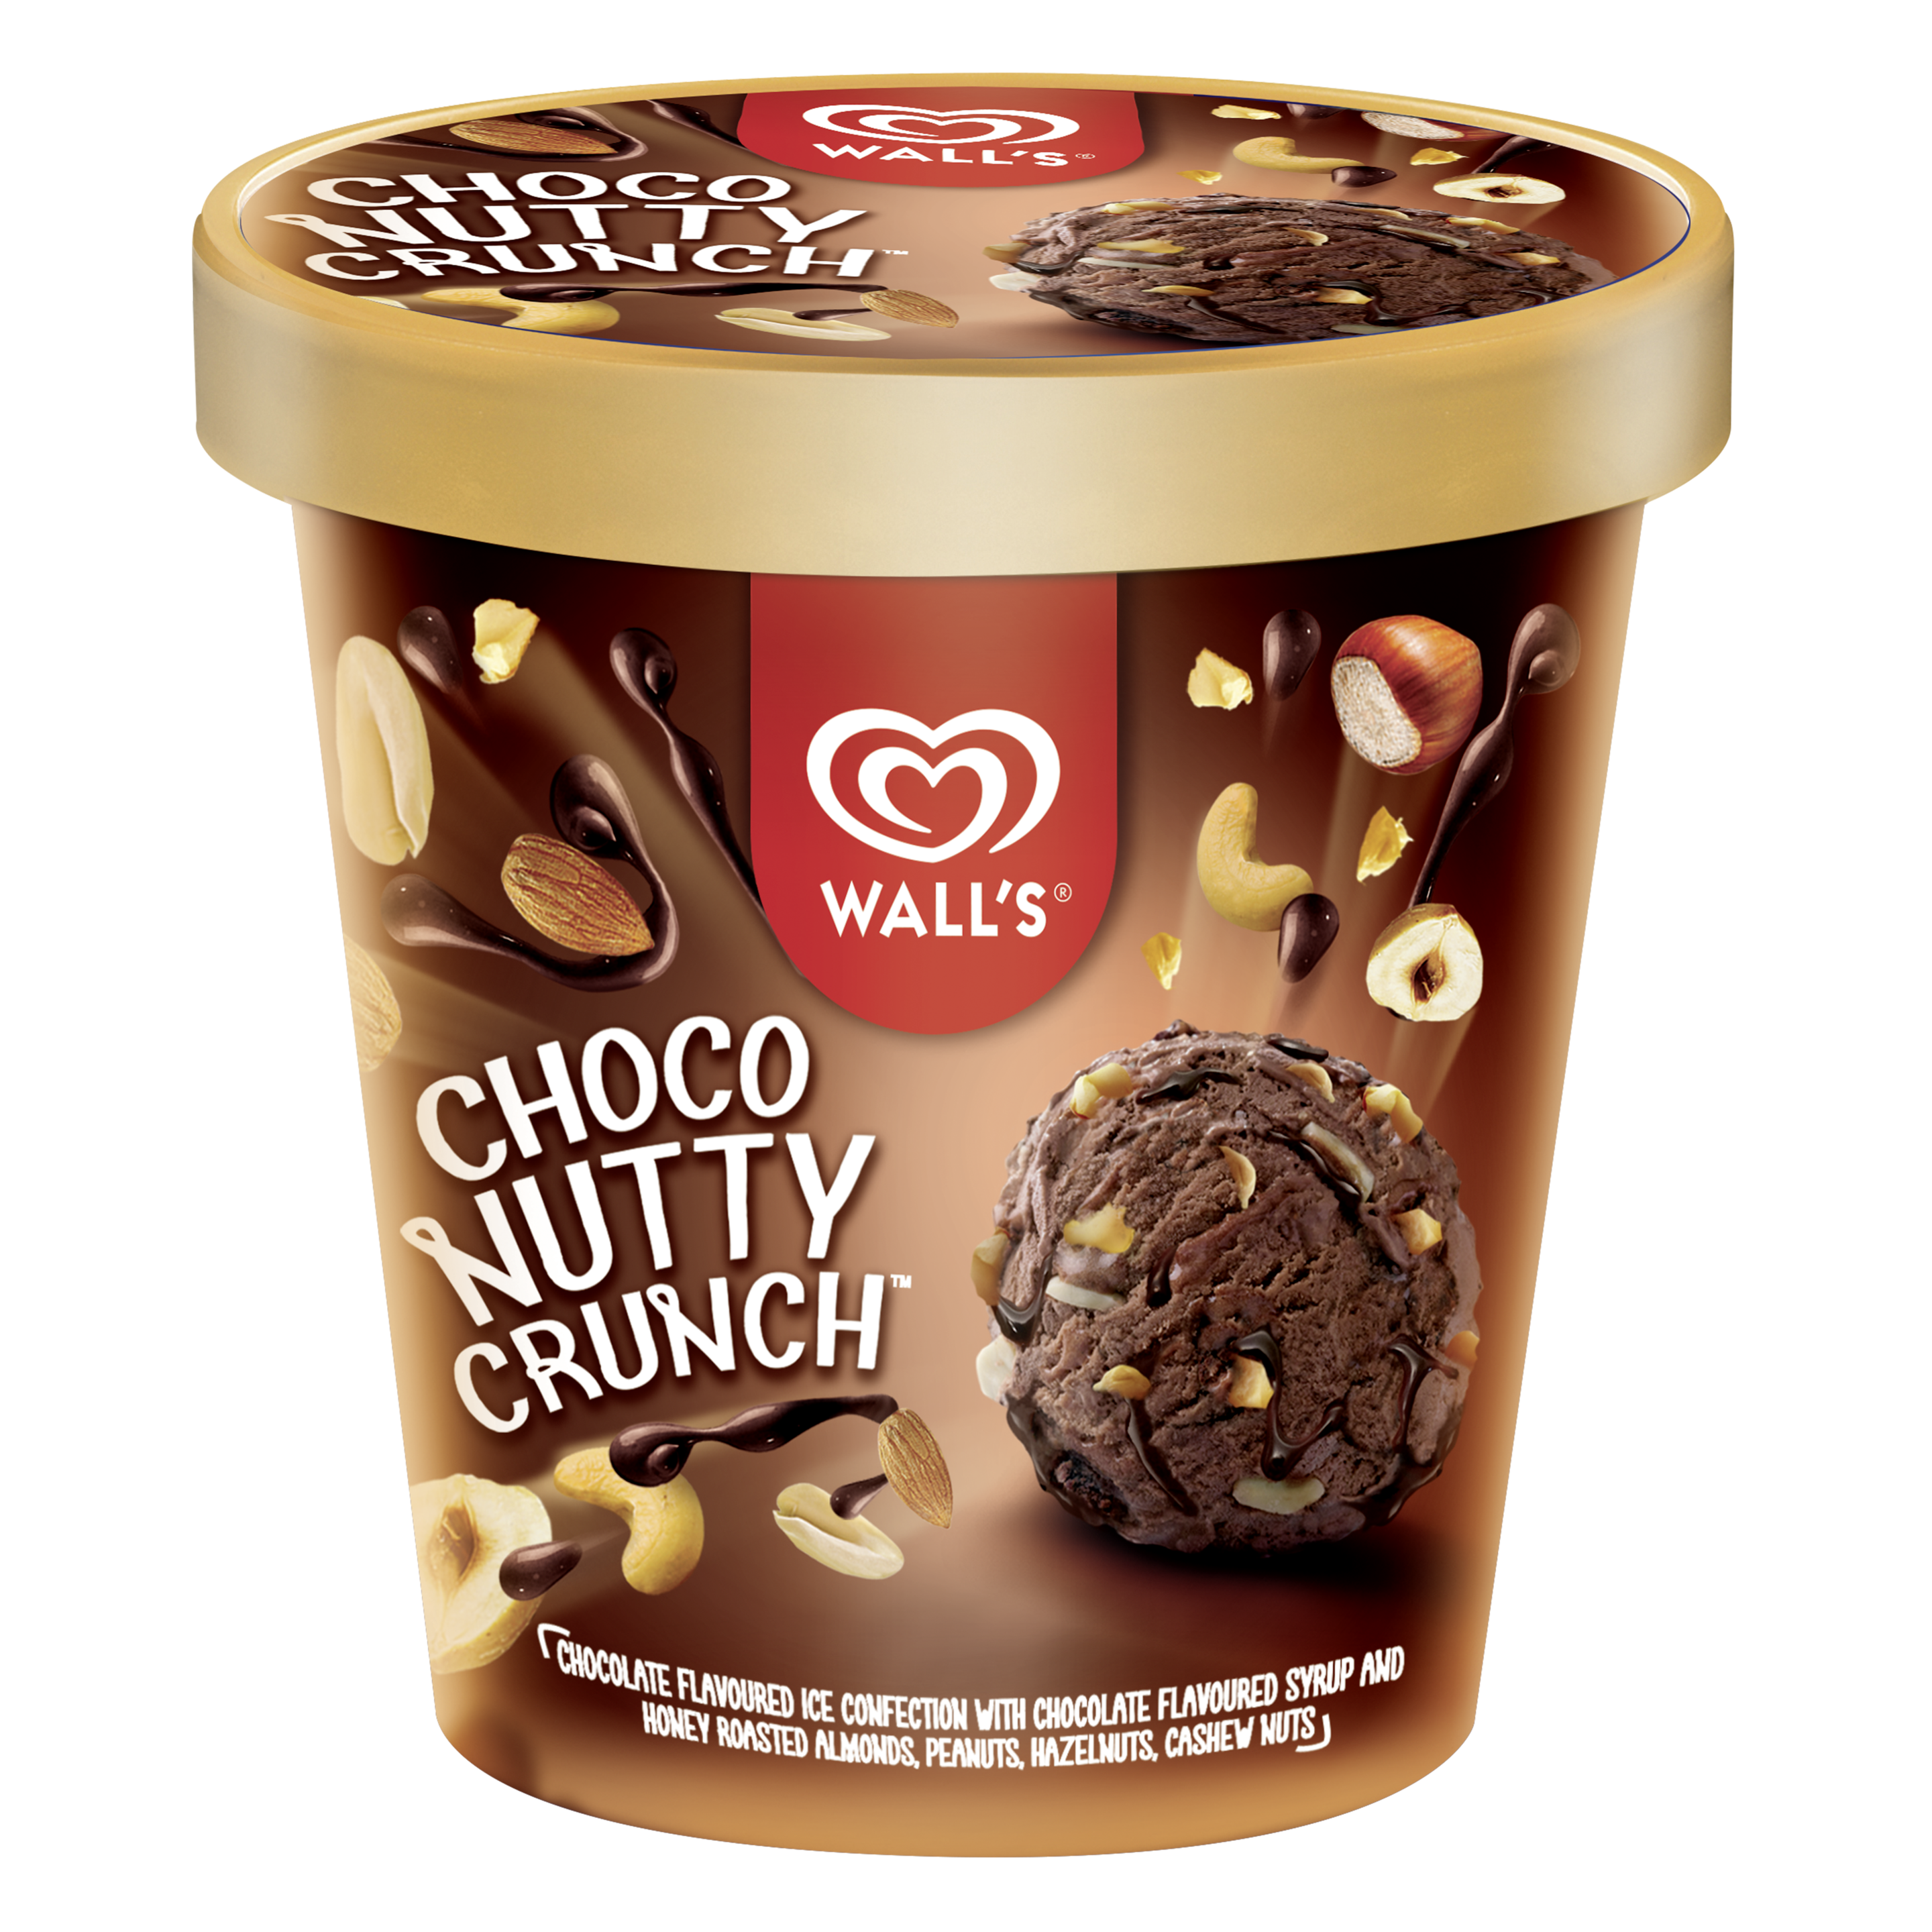 Wall's Choco Nutty Crunch